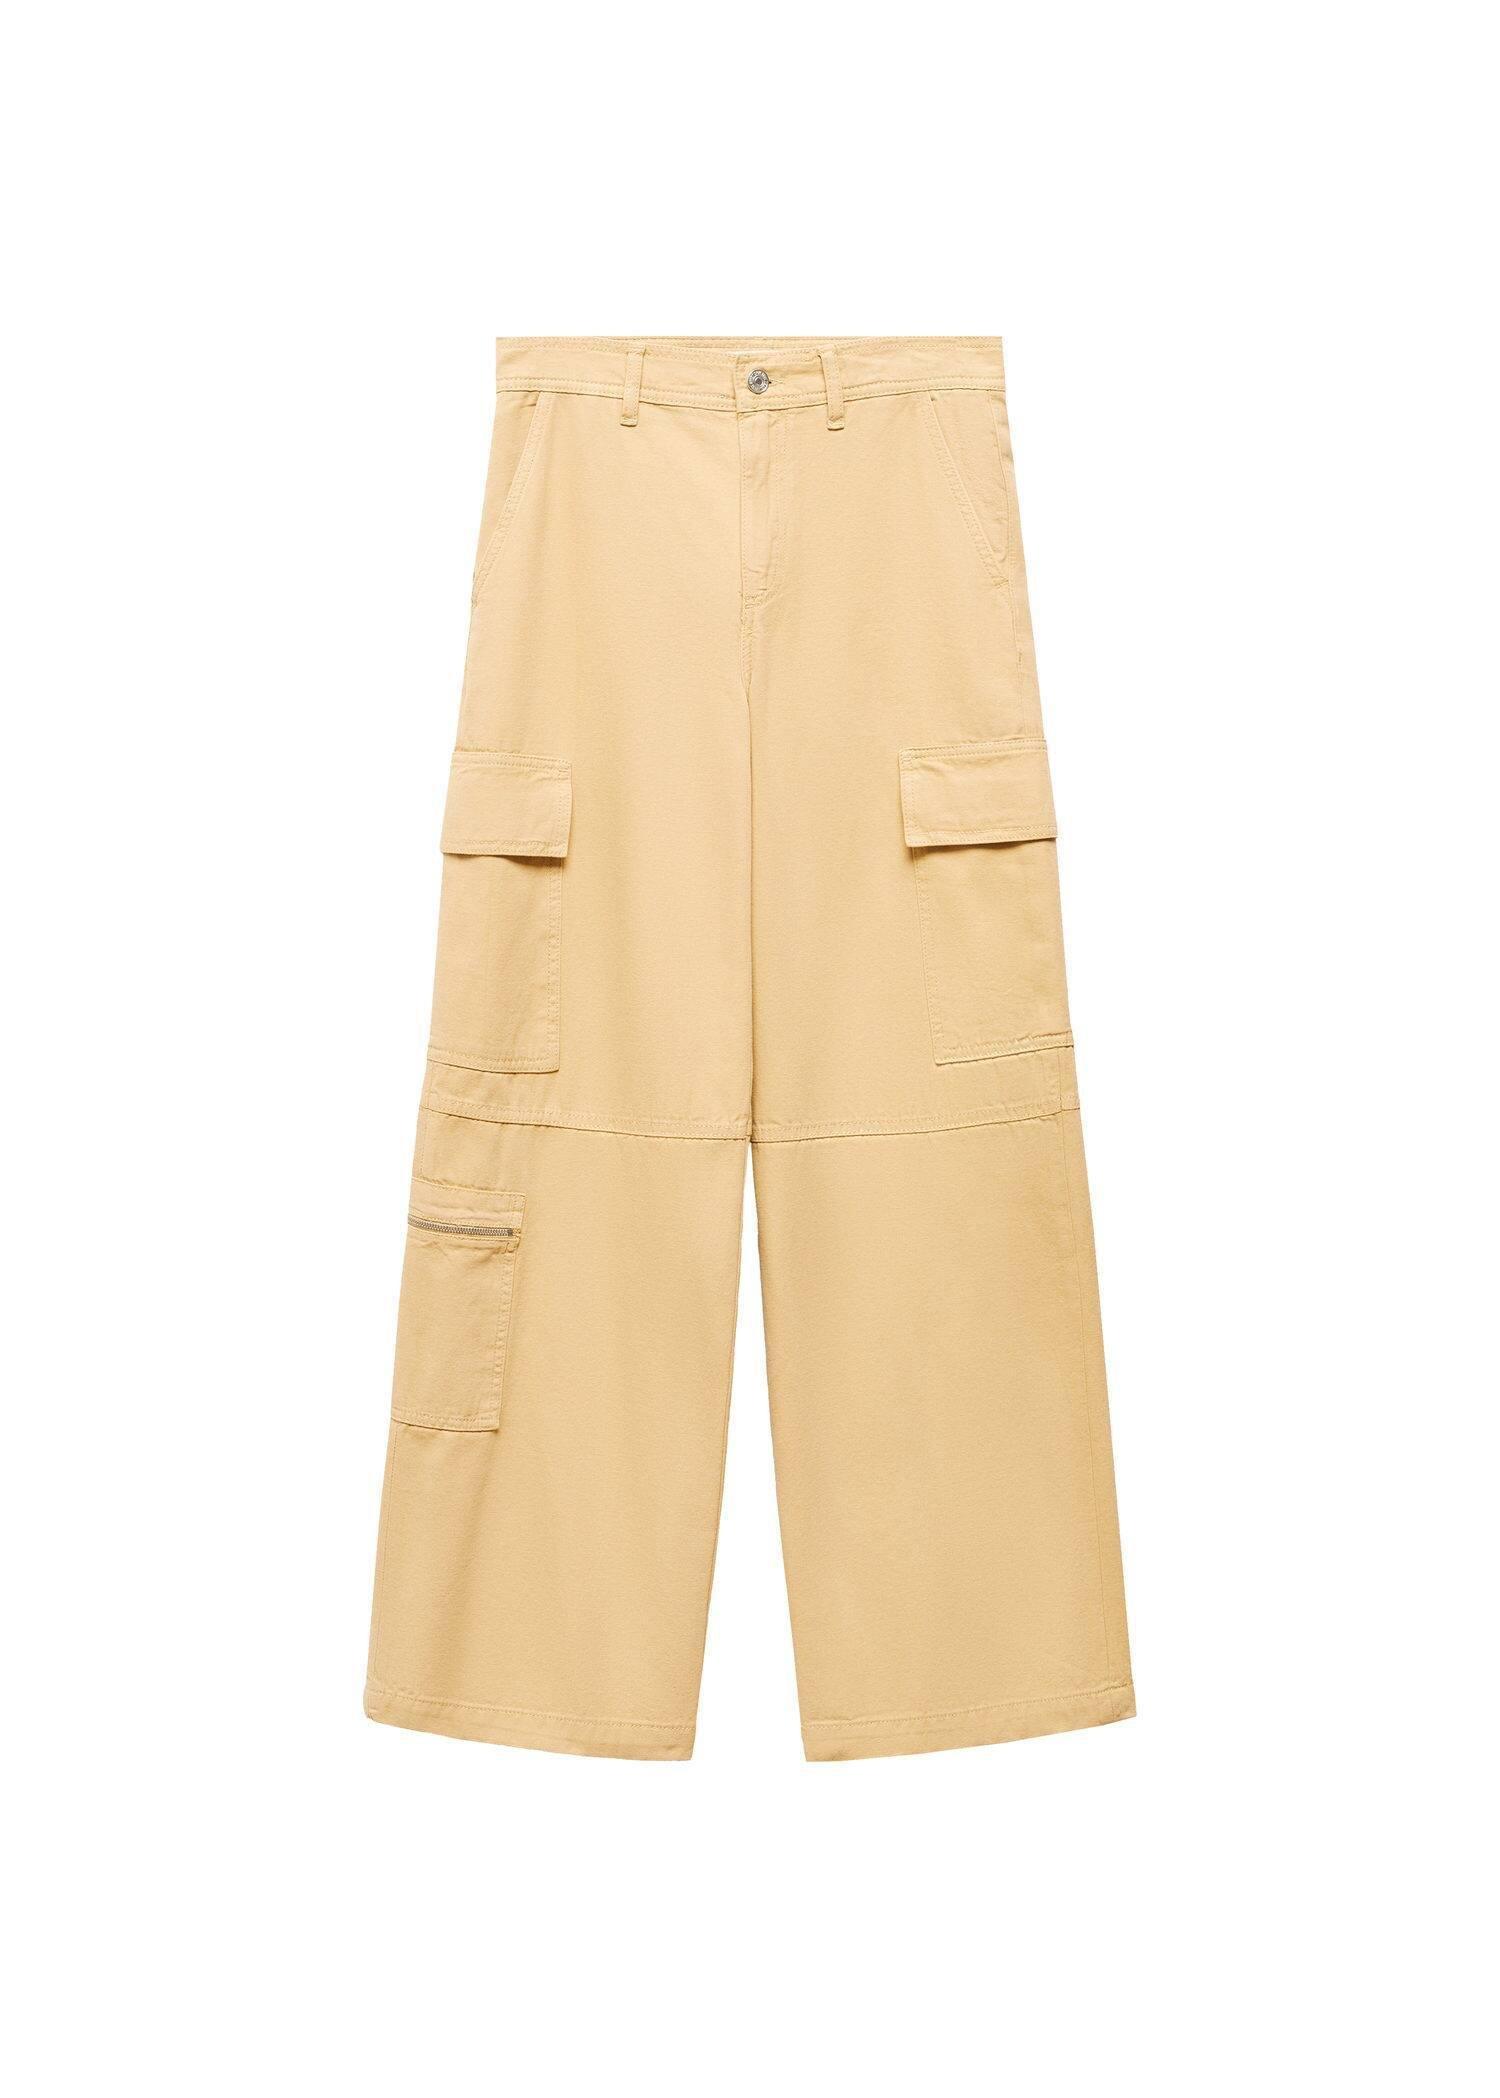 Mango - Brown Pocket Cargo Pants